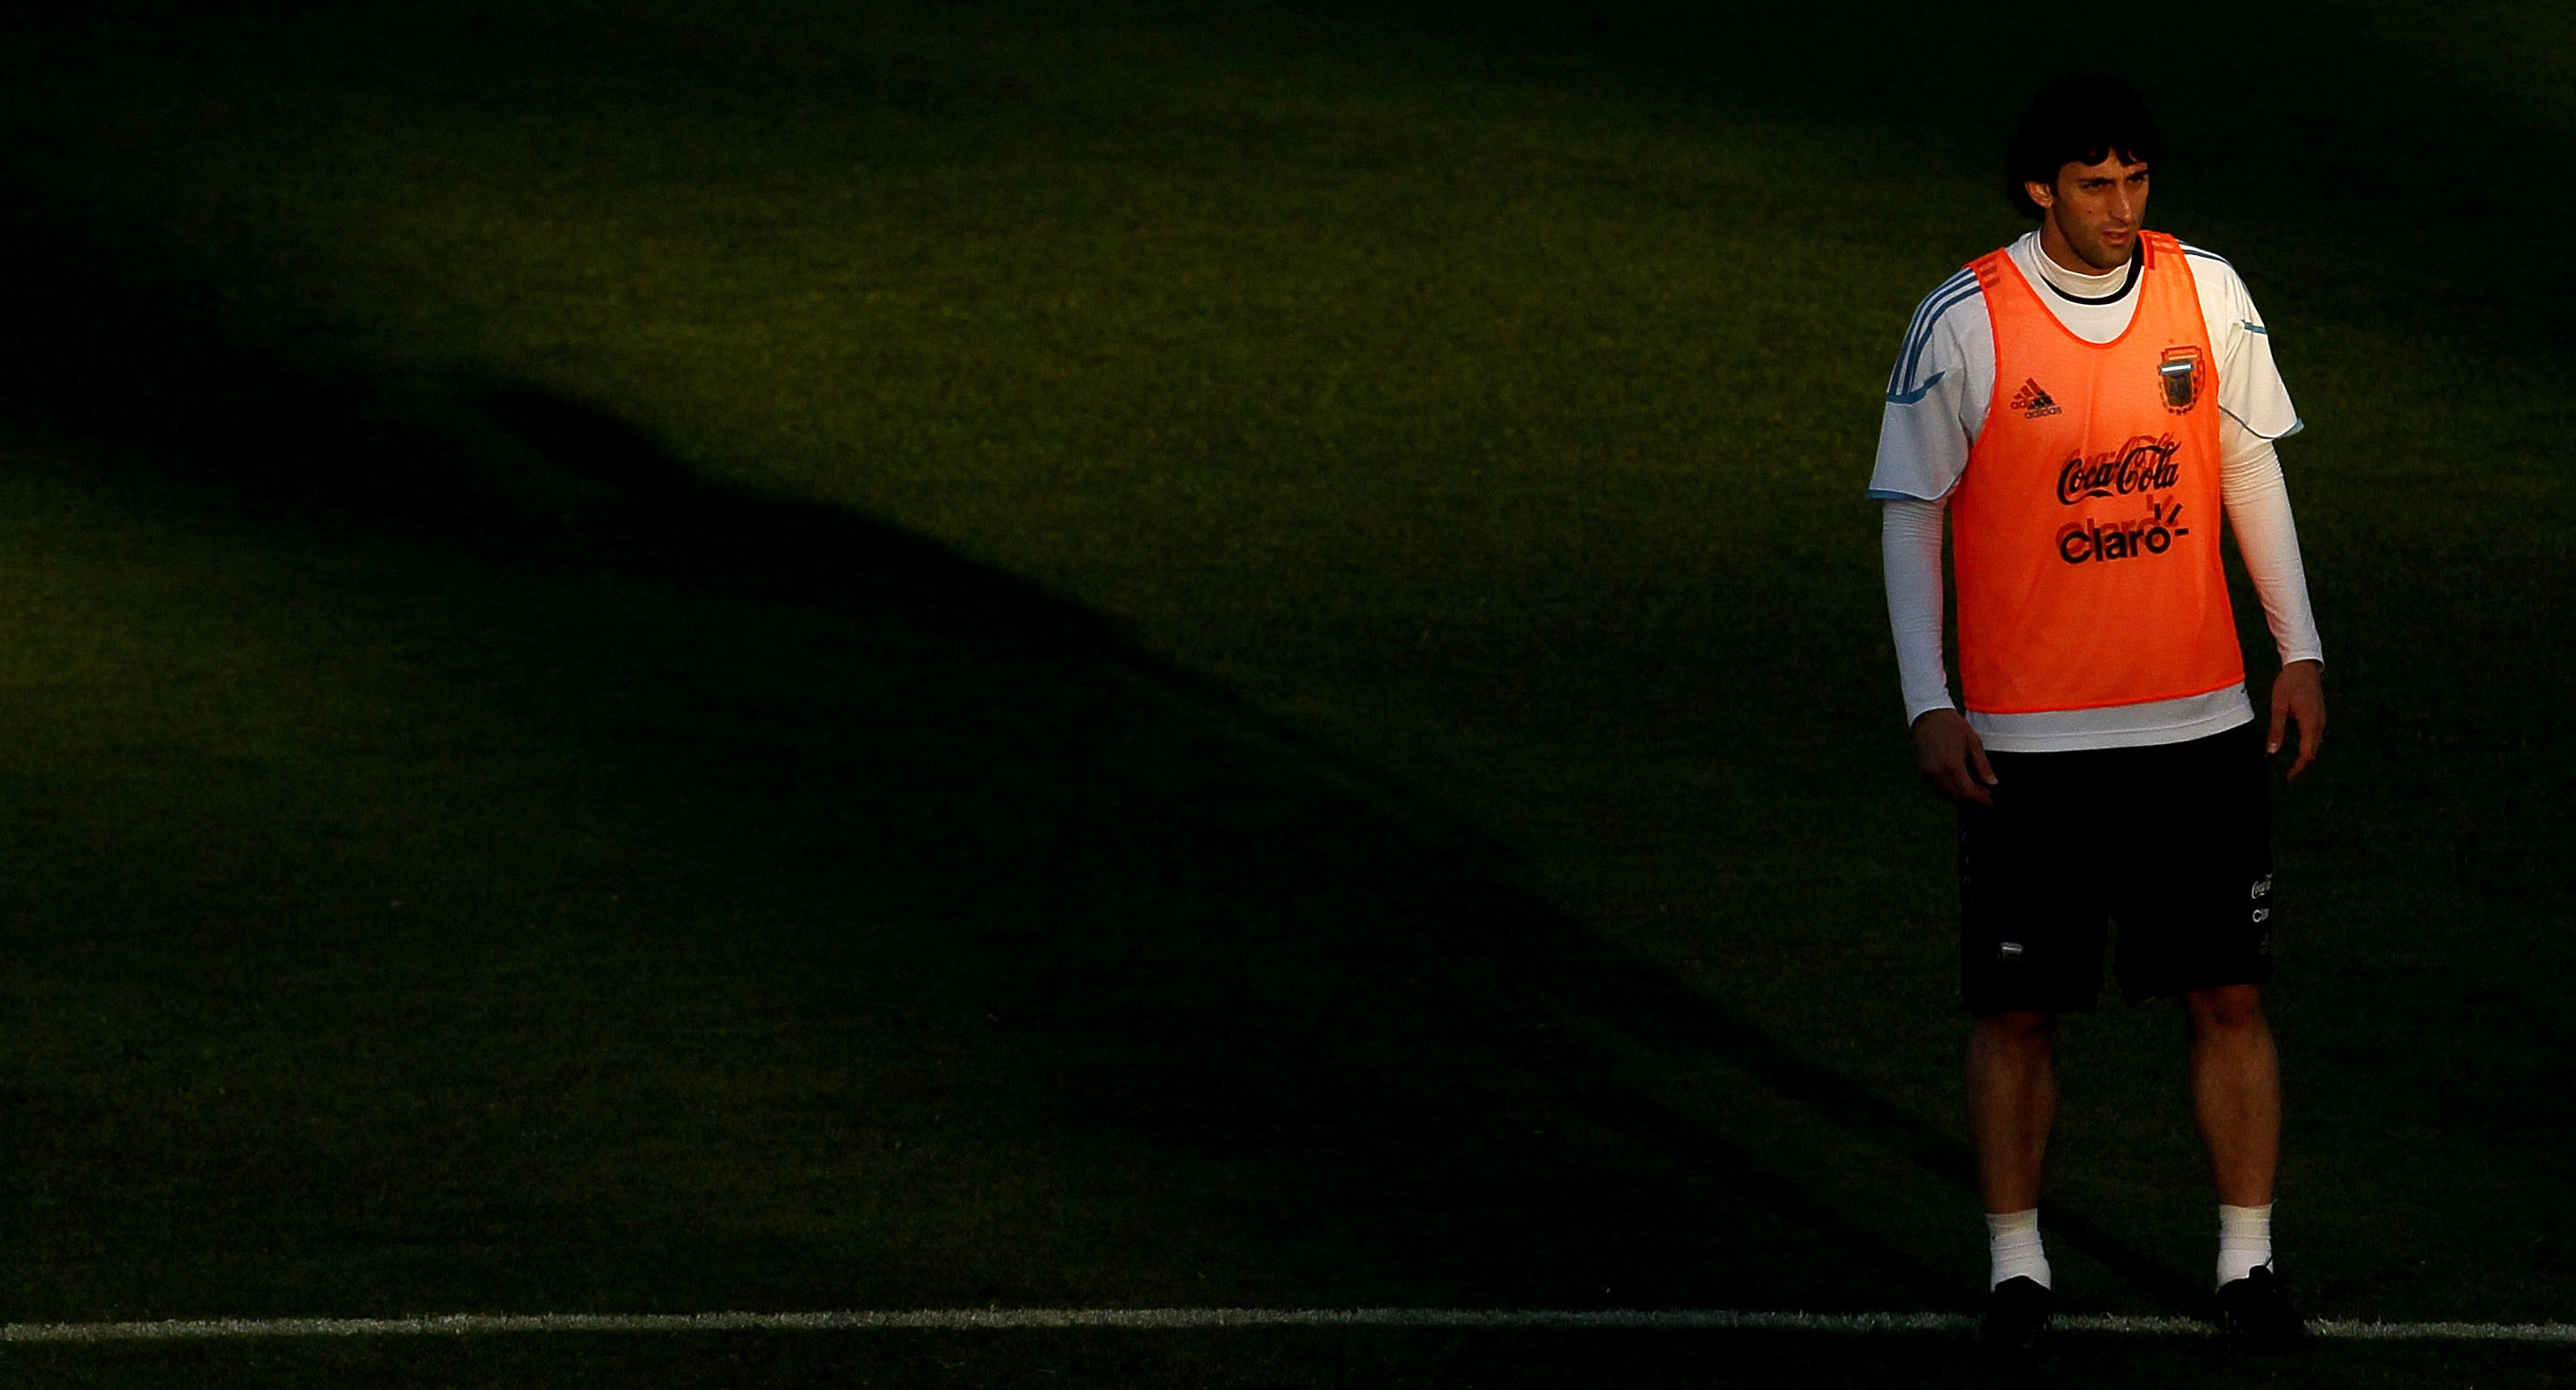 Diego Milito, internacional con Argentina, fue un jugador clave para Cocca en el título de Liga de Racing Club en 2014. McGrath/Getty Images